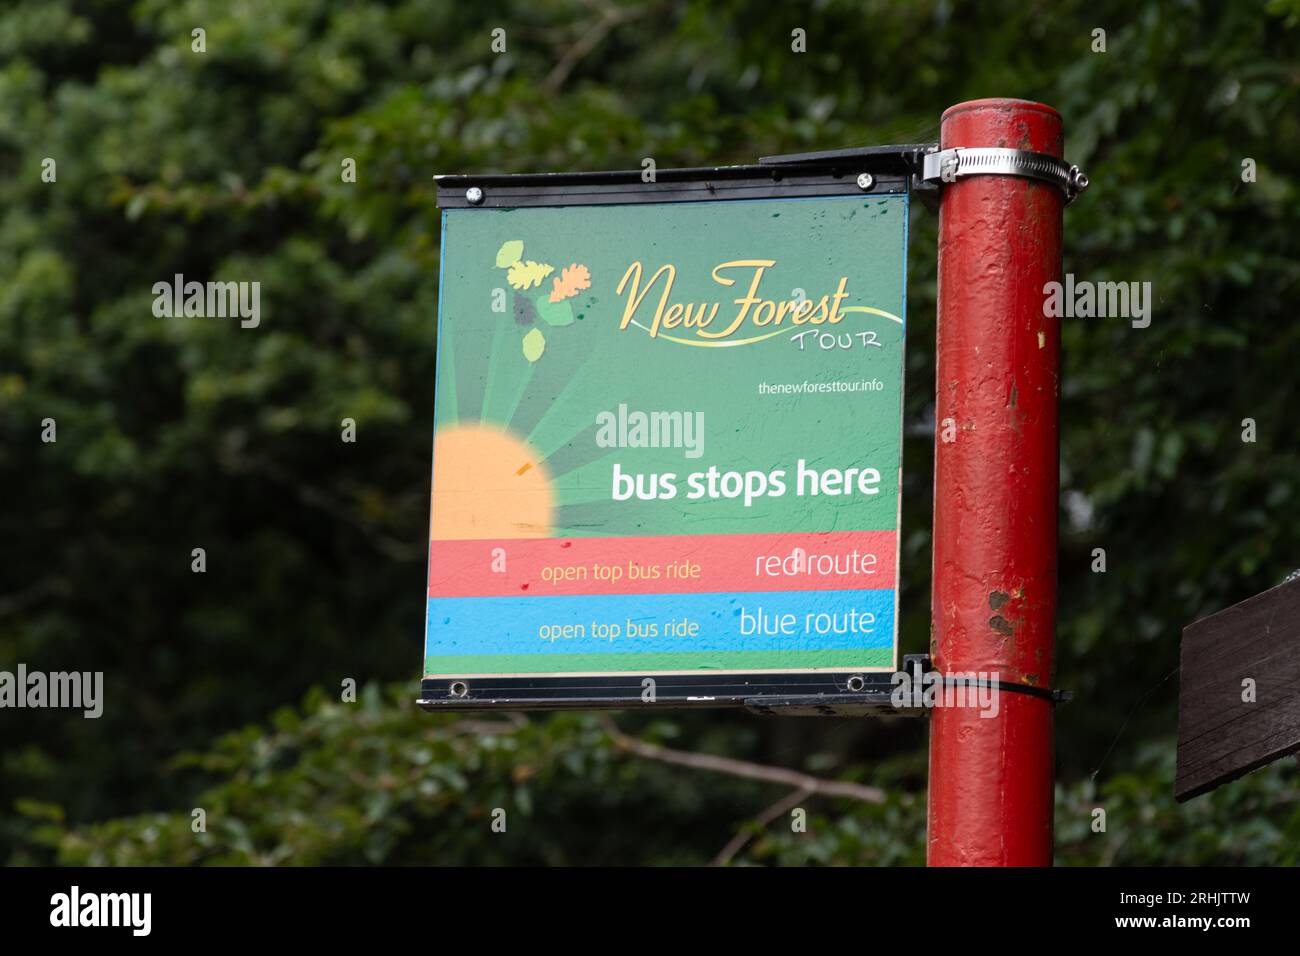 Panneau à l'arrêt de bus - New Forest tour bus s'arrête ici, Hampshire, Angleterre, Royaume-Uni Banque D'Images